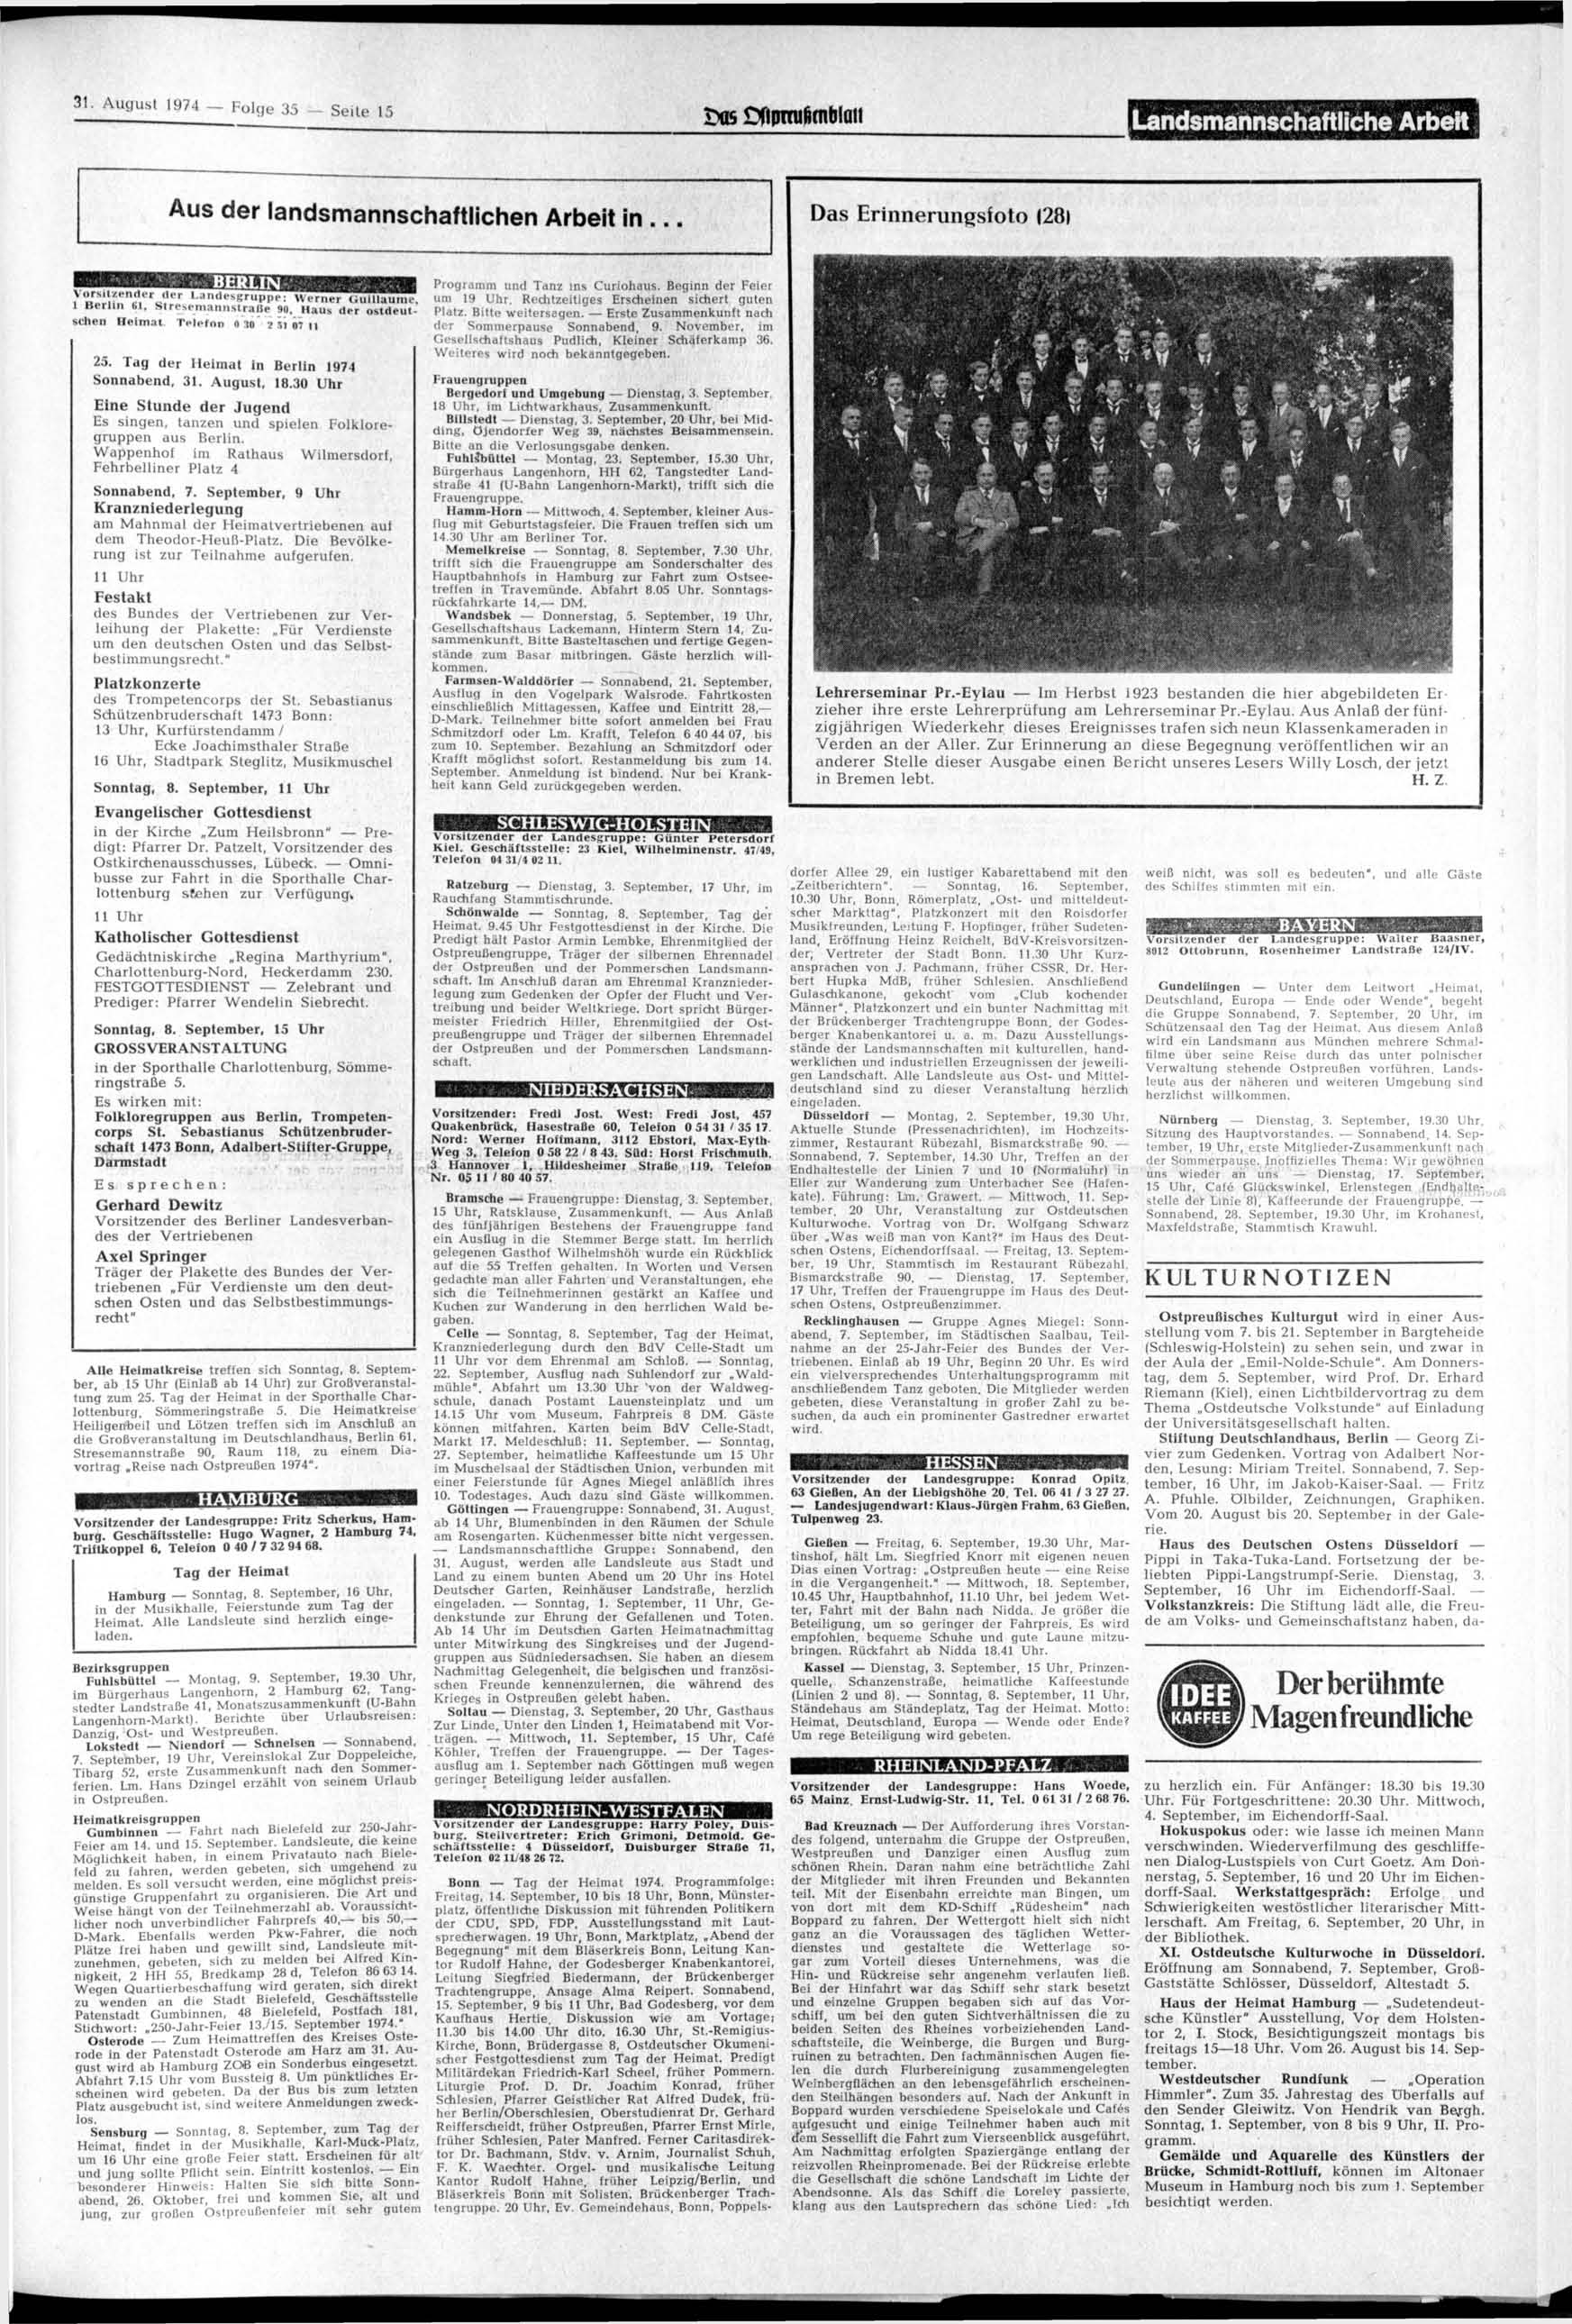 31. August 1974 - Folge 35 - Seite 15 _Ms OfiDrruhfnbiuH Landsmannschaftliche Arbeit Aus der landsmannschaftlichen Arbeit in... Das Erinnerungsfoto (28, BERLIN i _;T?» «_?